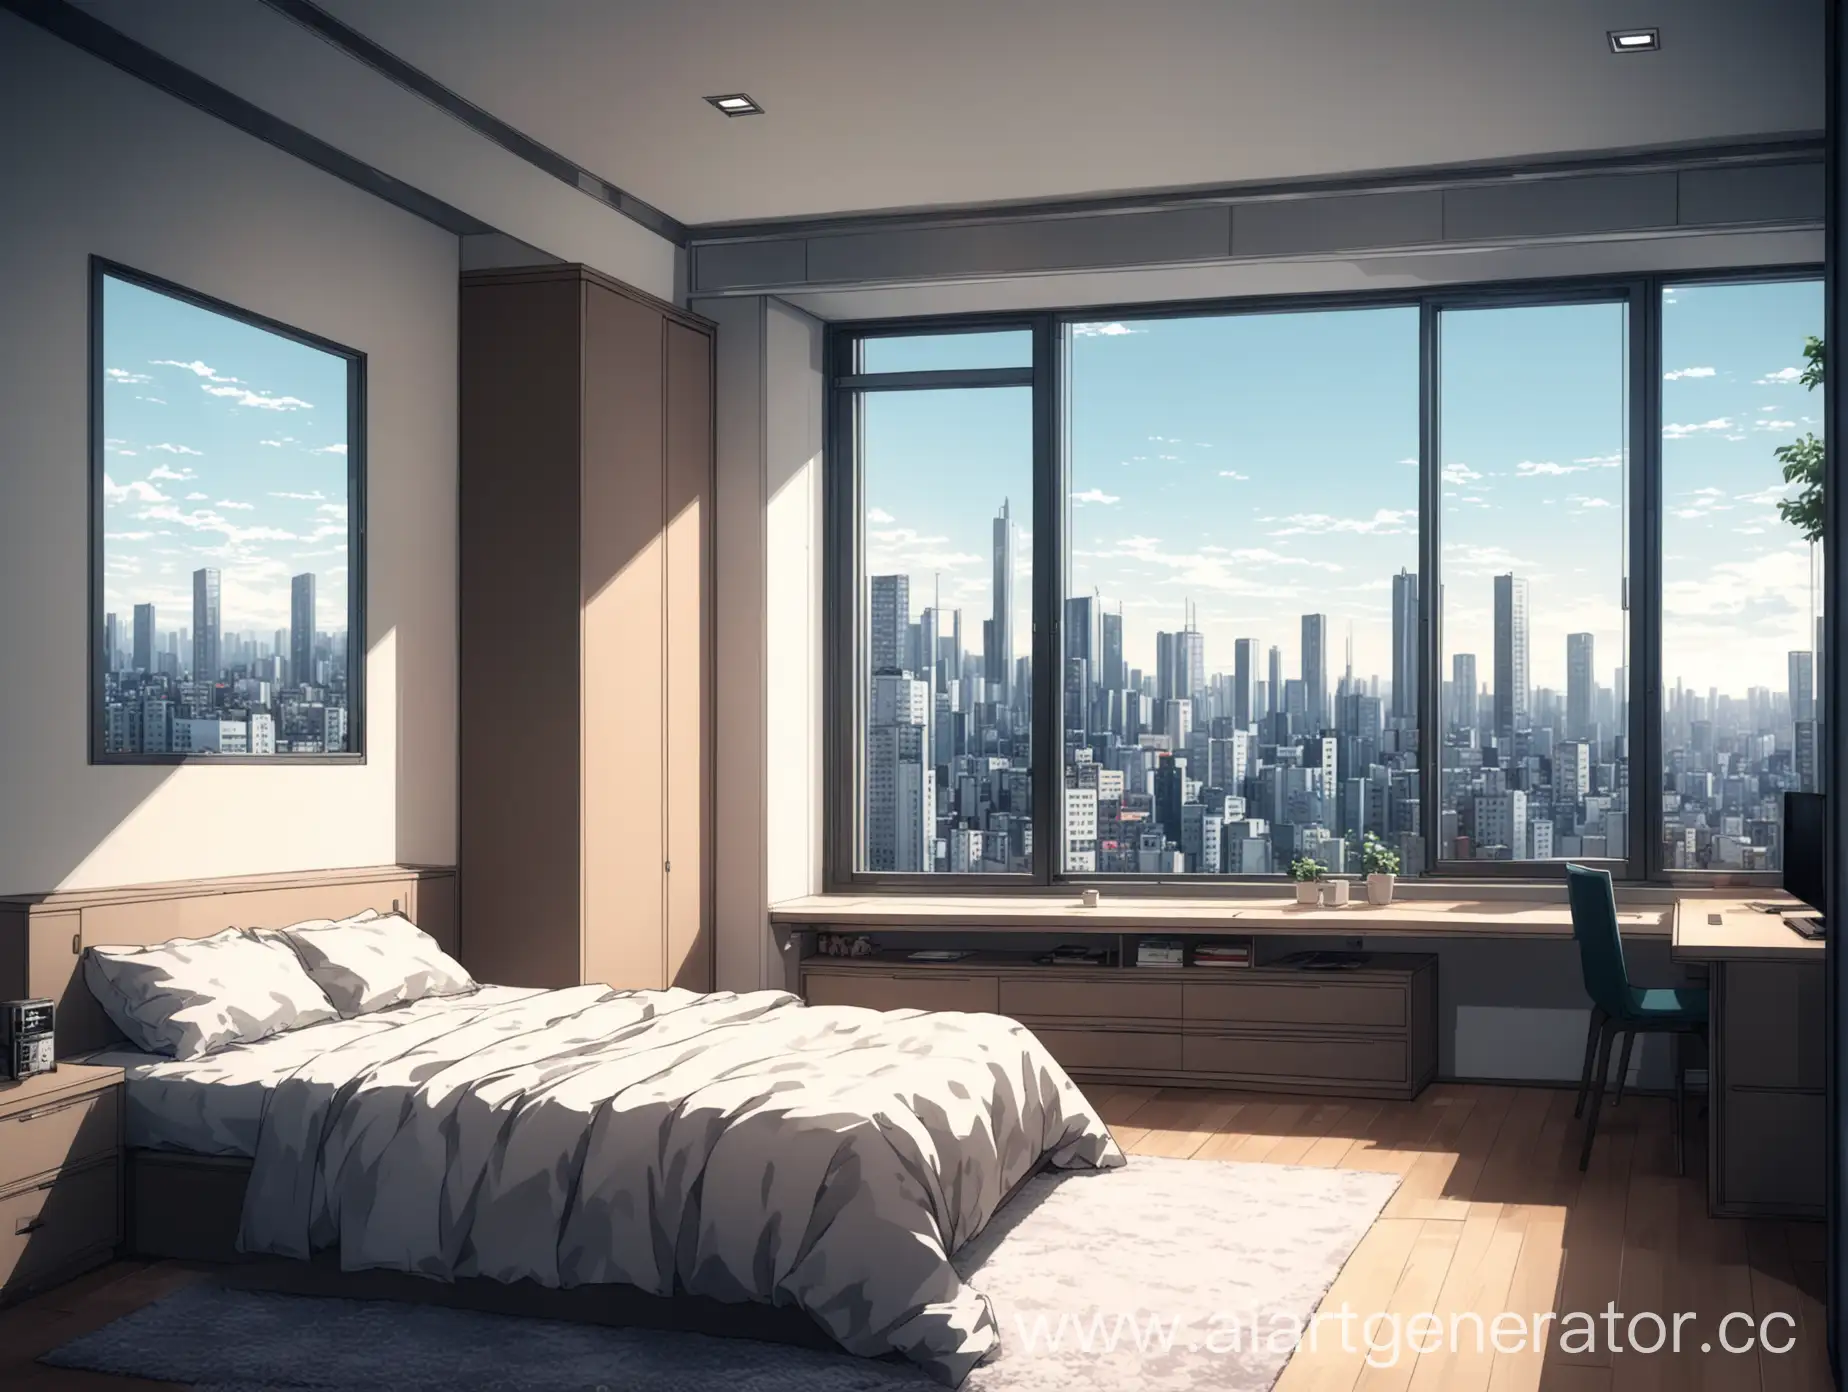 квартира, комната с панорамным окном, подоконник, за окном город, рядом кровать и шкаф, современный стиль дизайна, стиль аниме